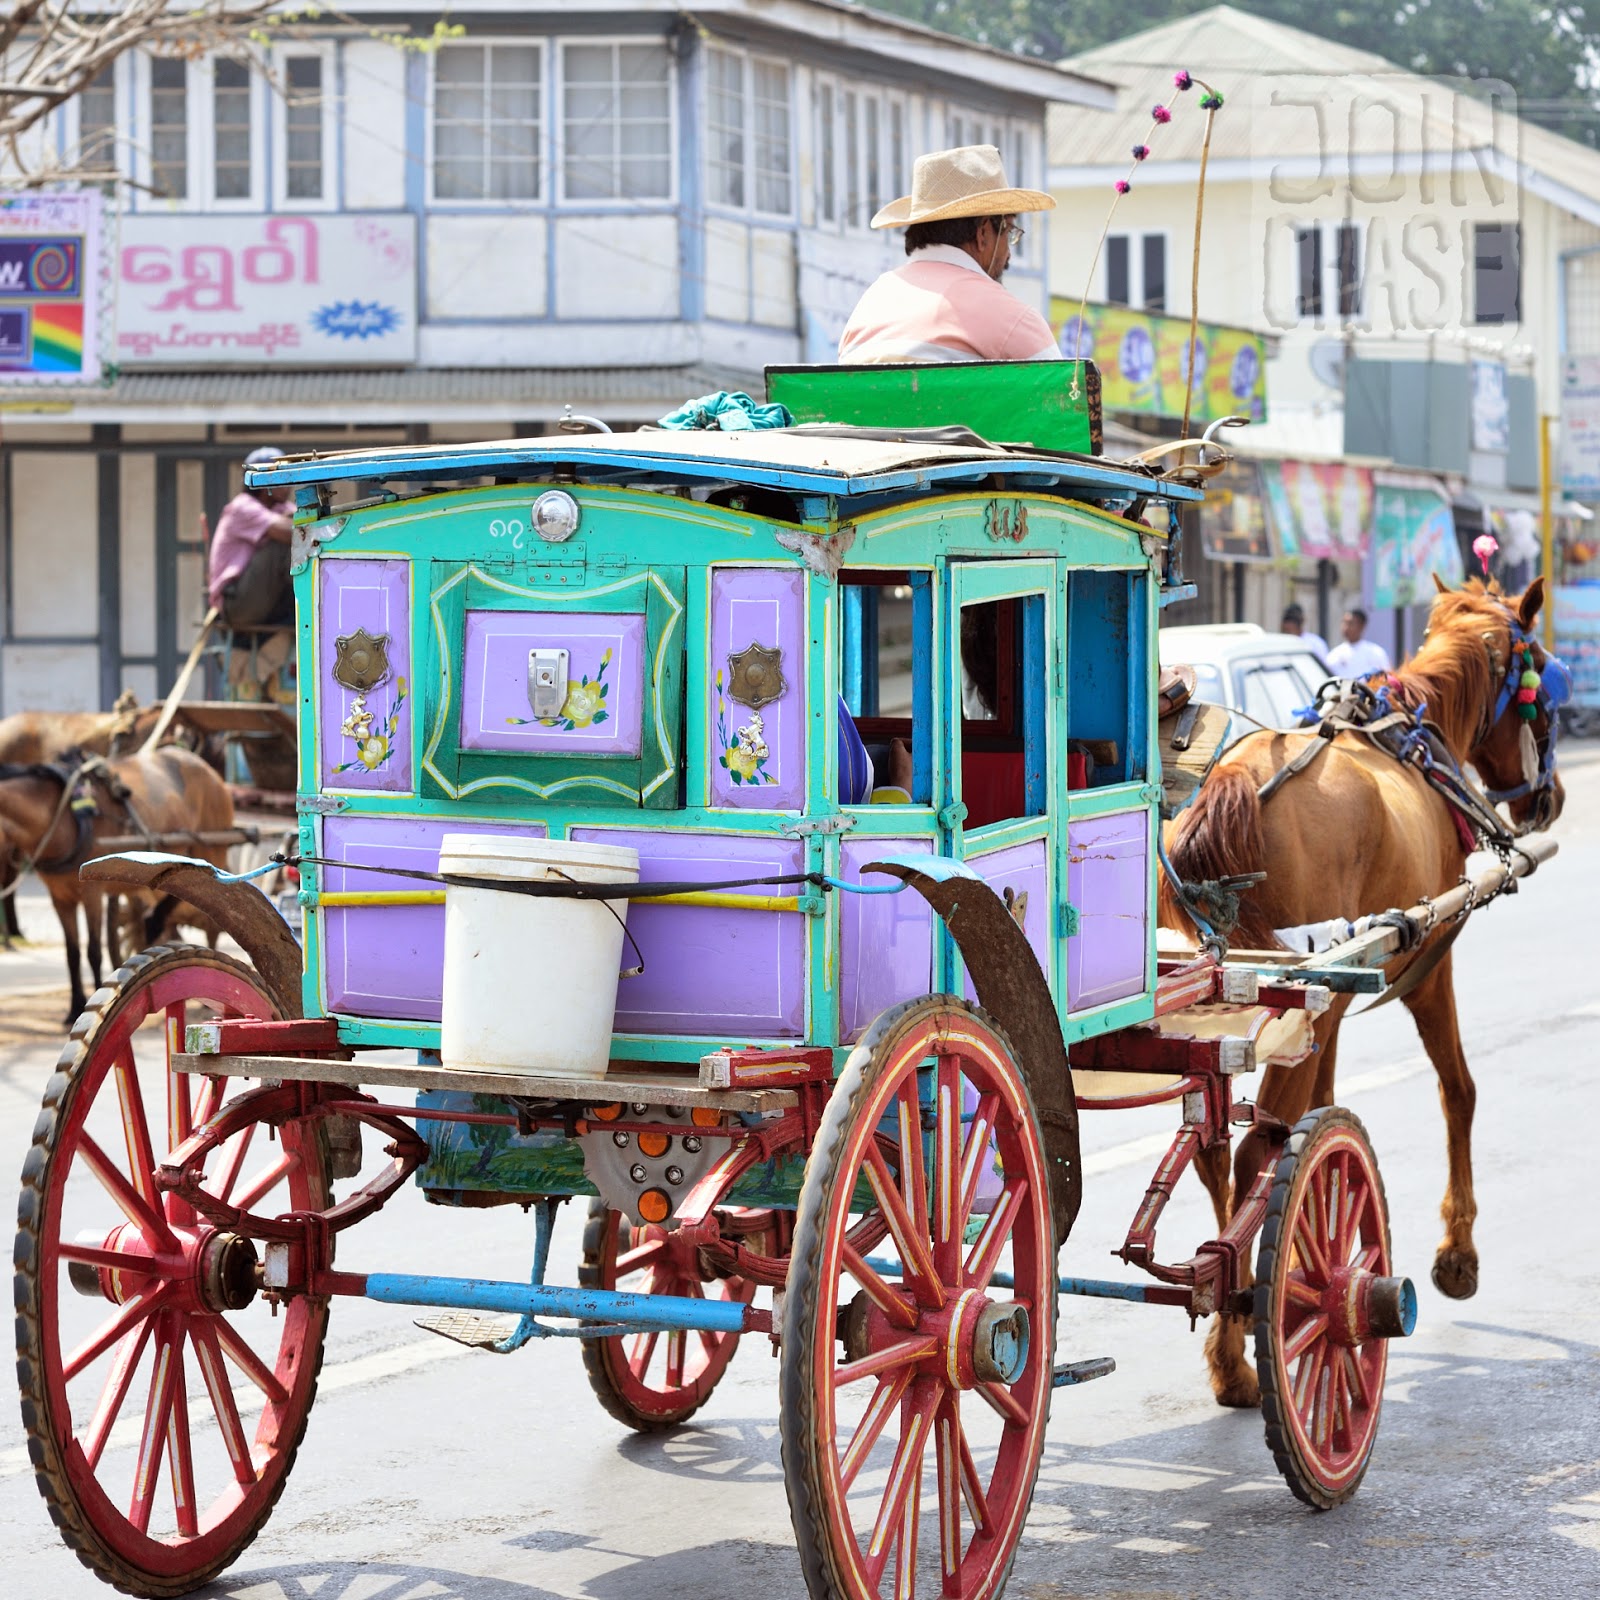 A horse-drawn carriage in Pyin Oo Lwin, Myanmar.